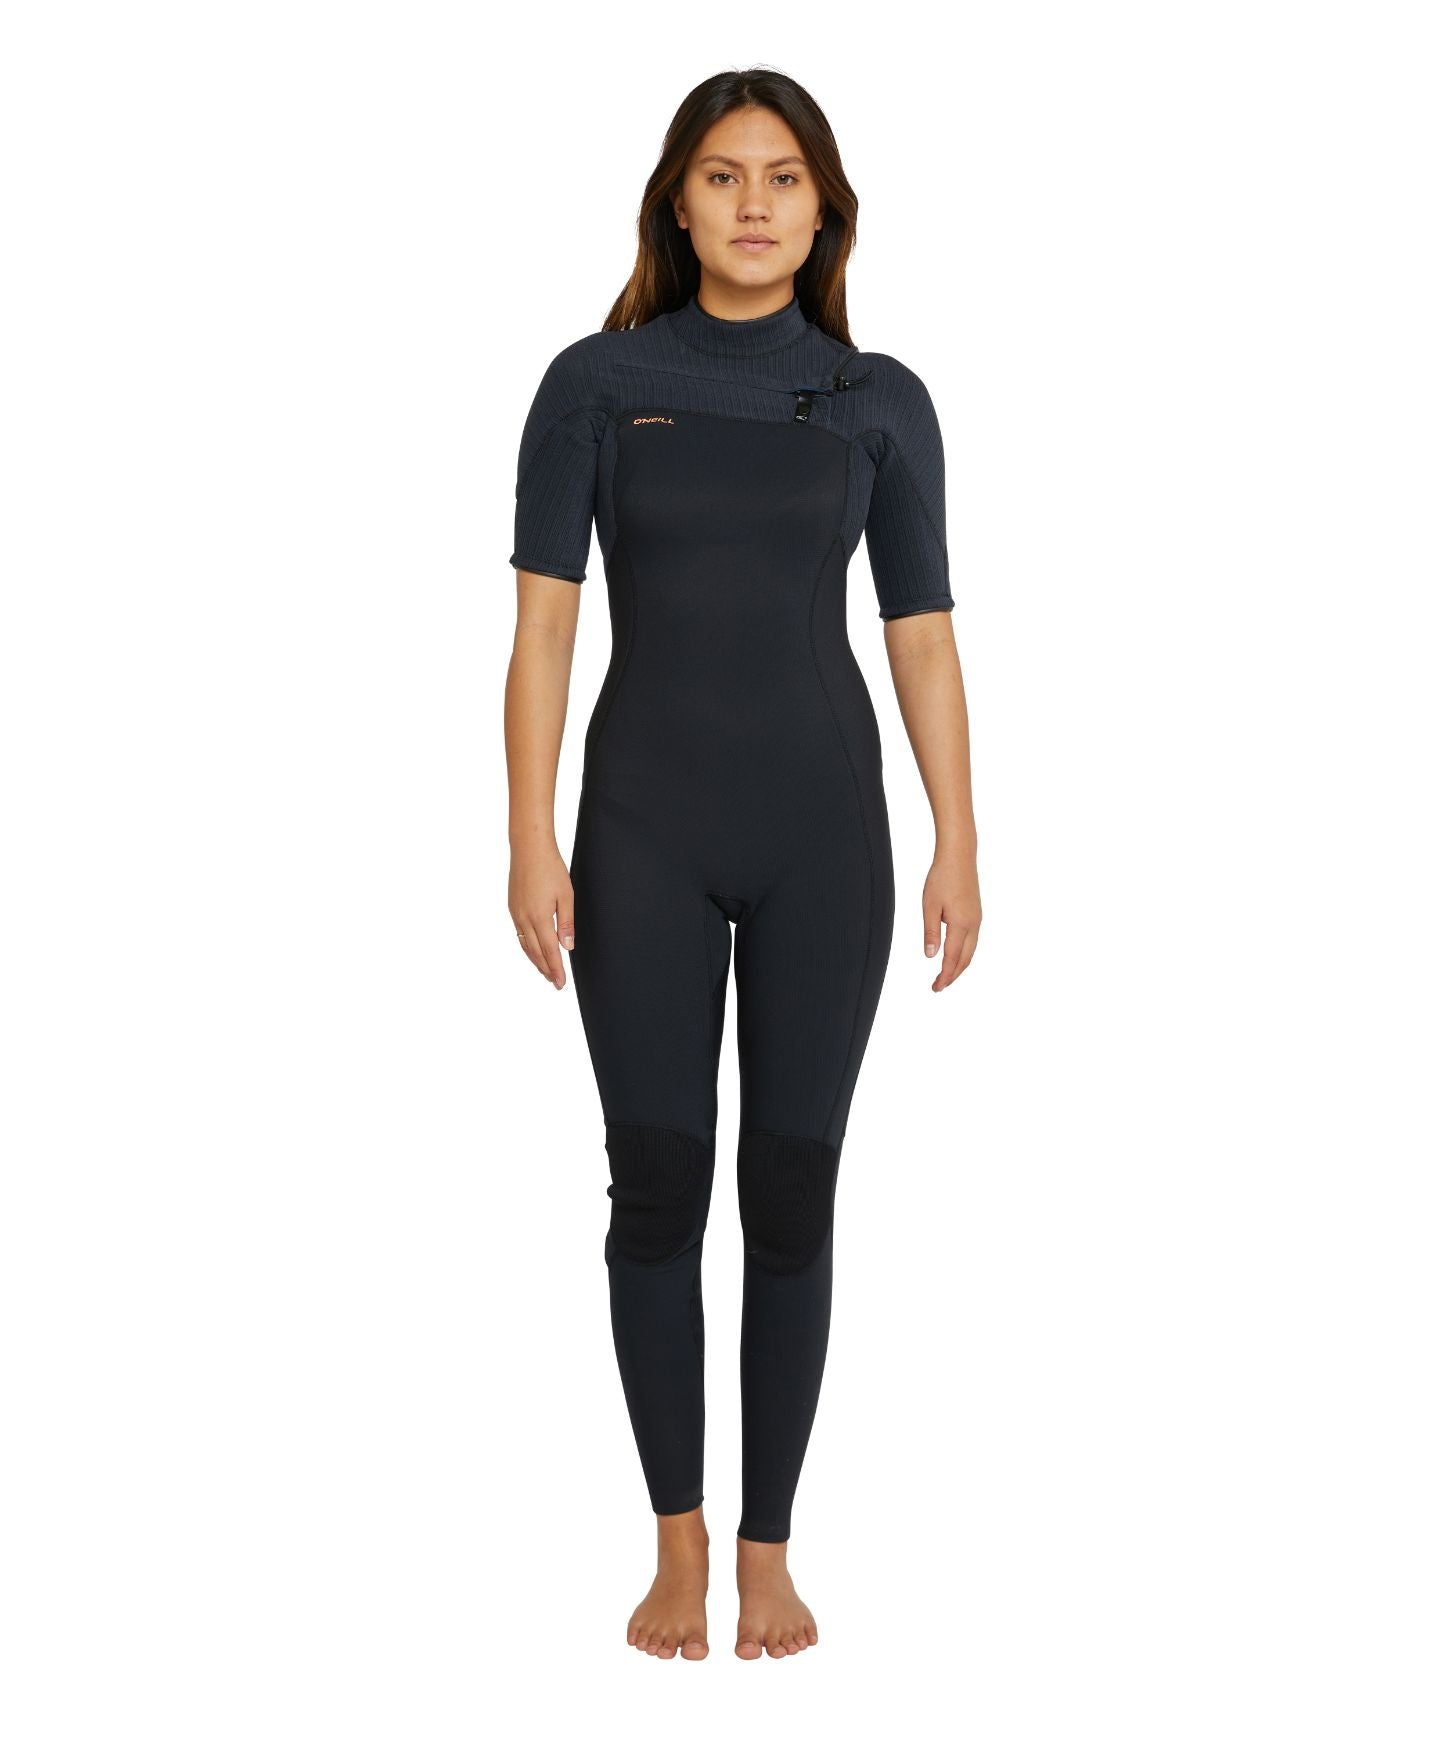 Women's HyperFreak Short Sleeve Steamer 2mm Wetsuit - Black